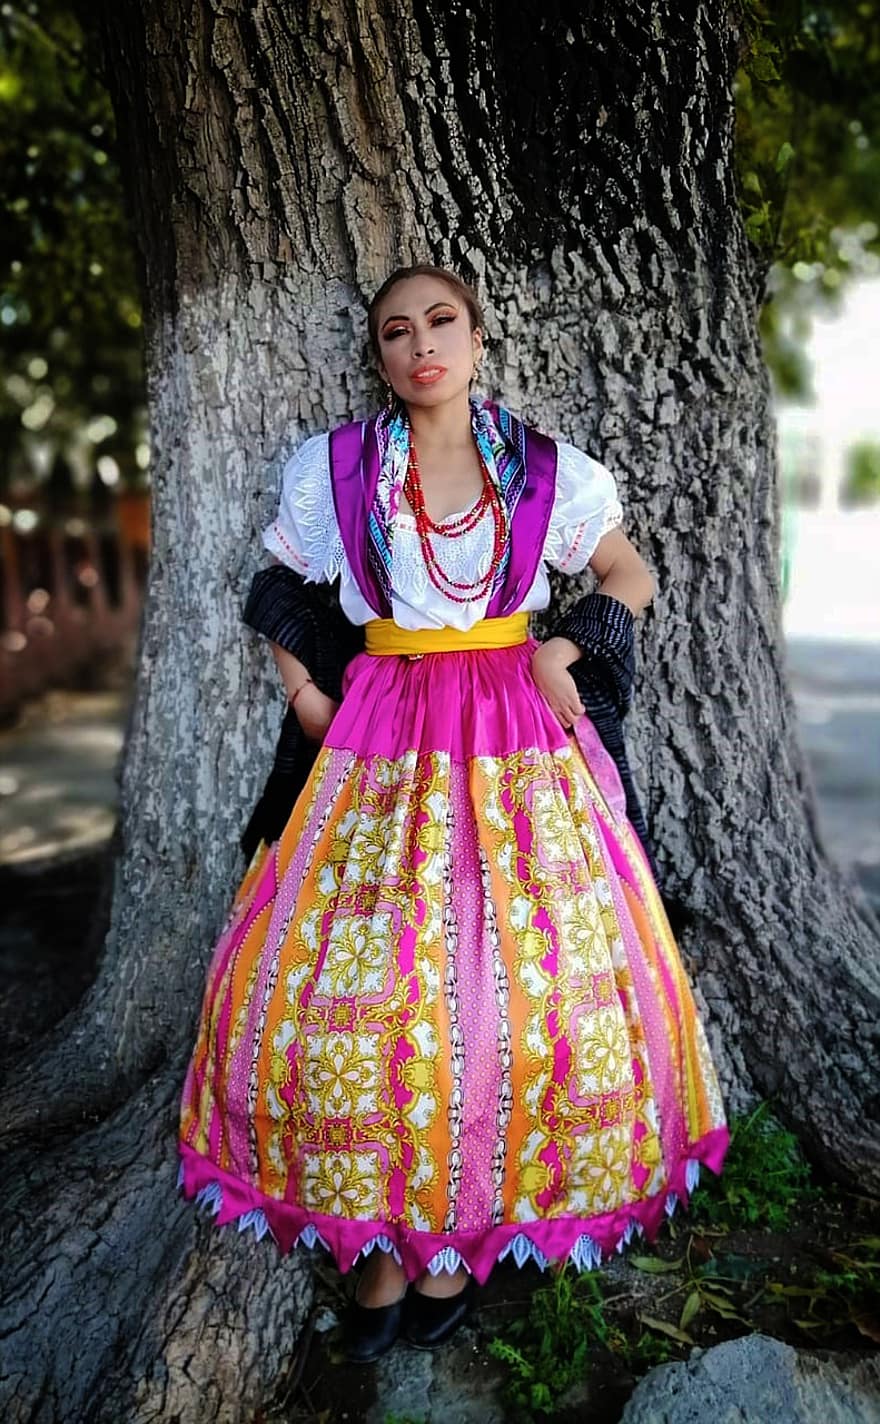 donna, ballerino, folclore, danza, tradizionale, tradizione, costume, vestito